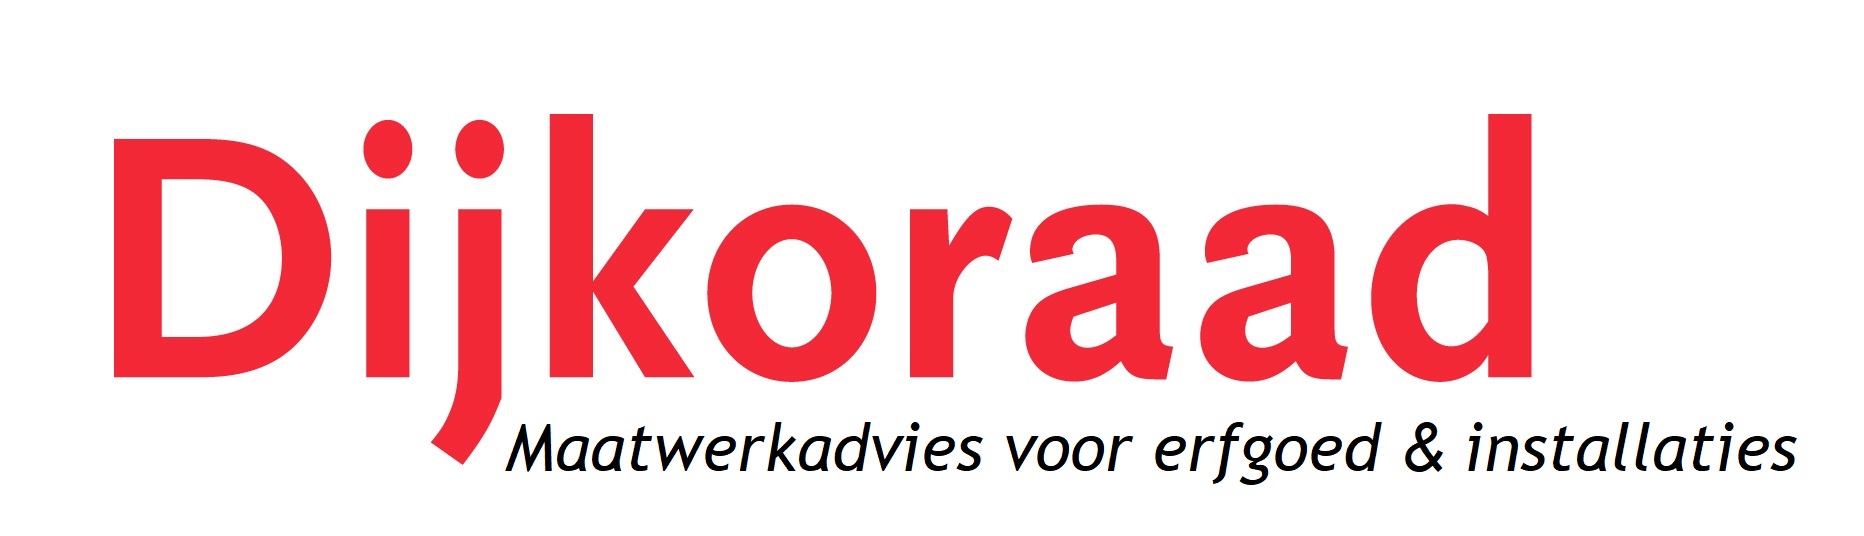 Logo van Dijkoraad. Dijkoraad staat in rode letters met daaronder cursief geschreven "Maatwerkadvies voor erfgoed & installaties"